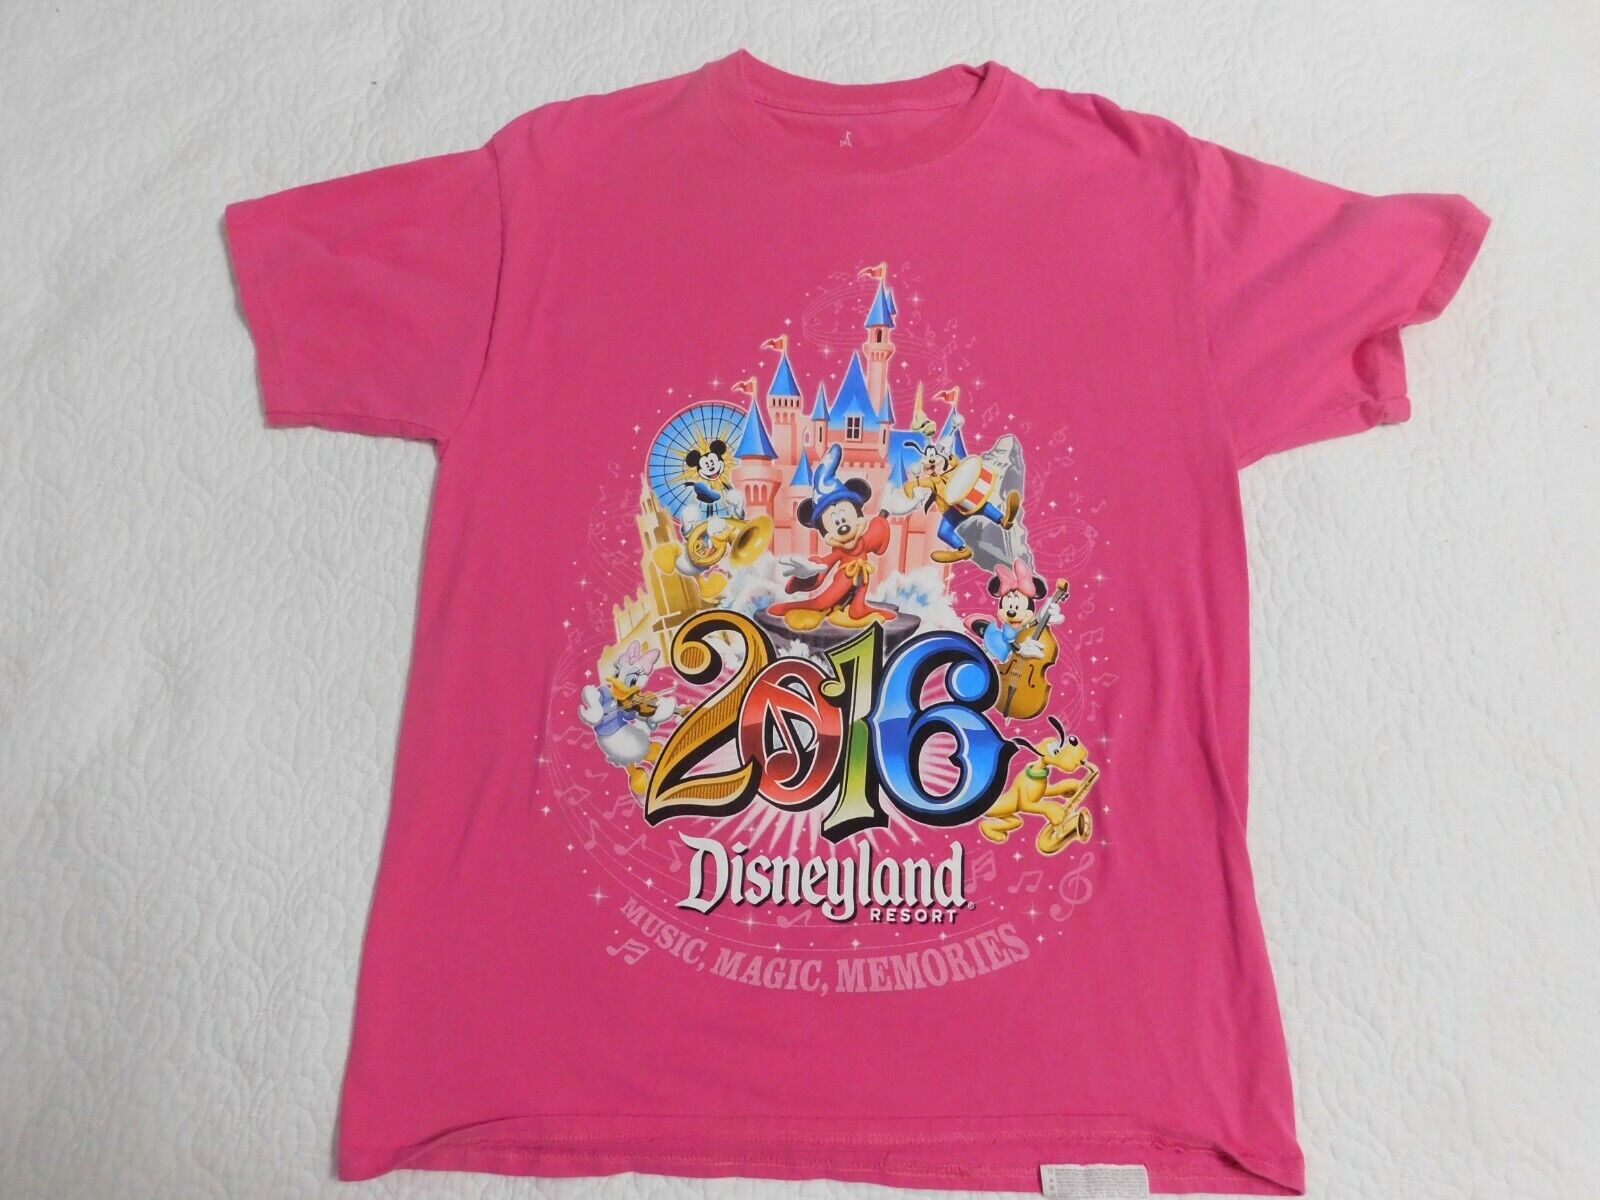 2016 Pink Disneyland Resort Med T-shirt - Adult Medium